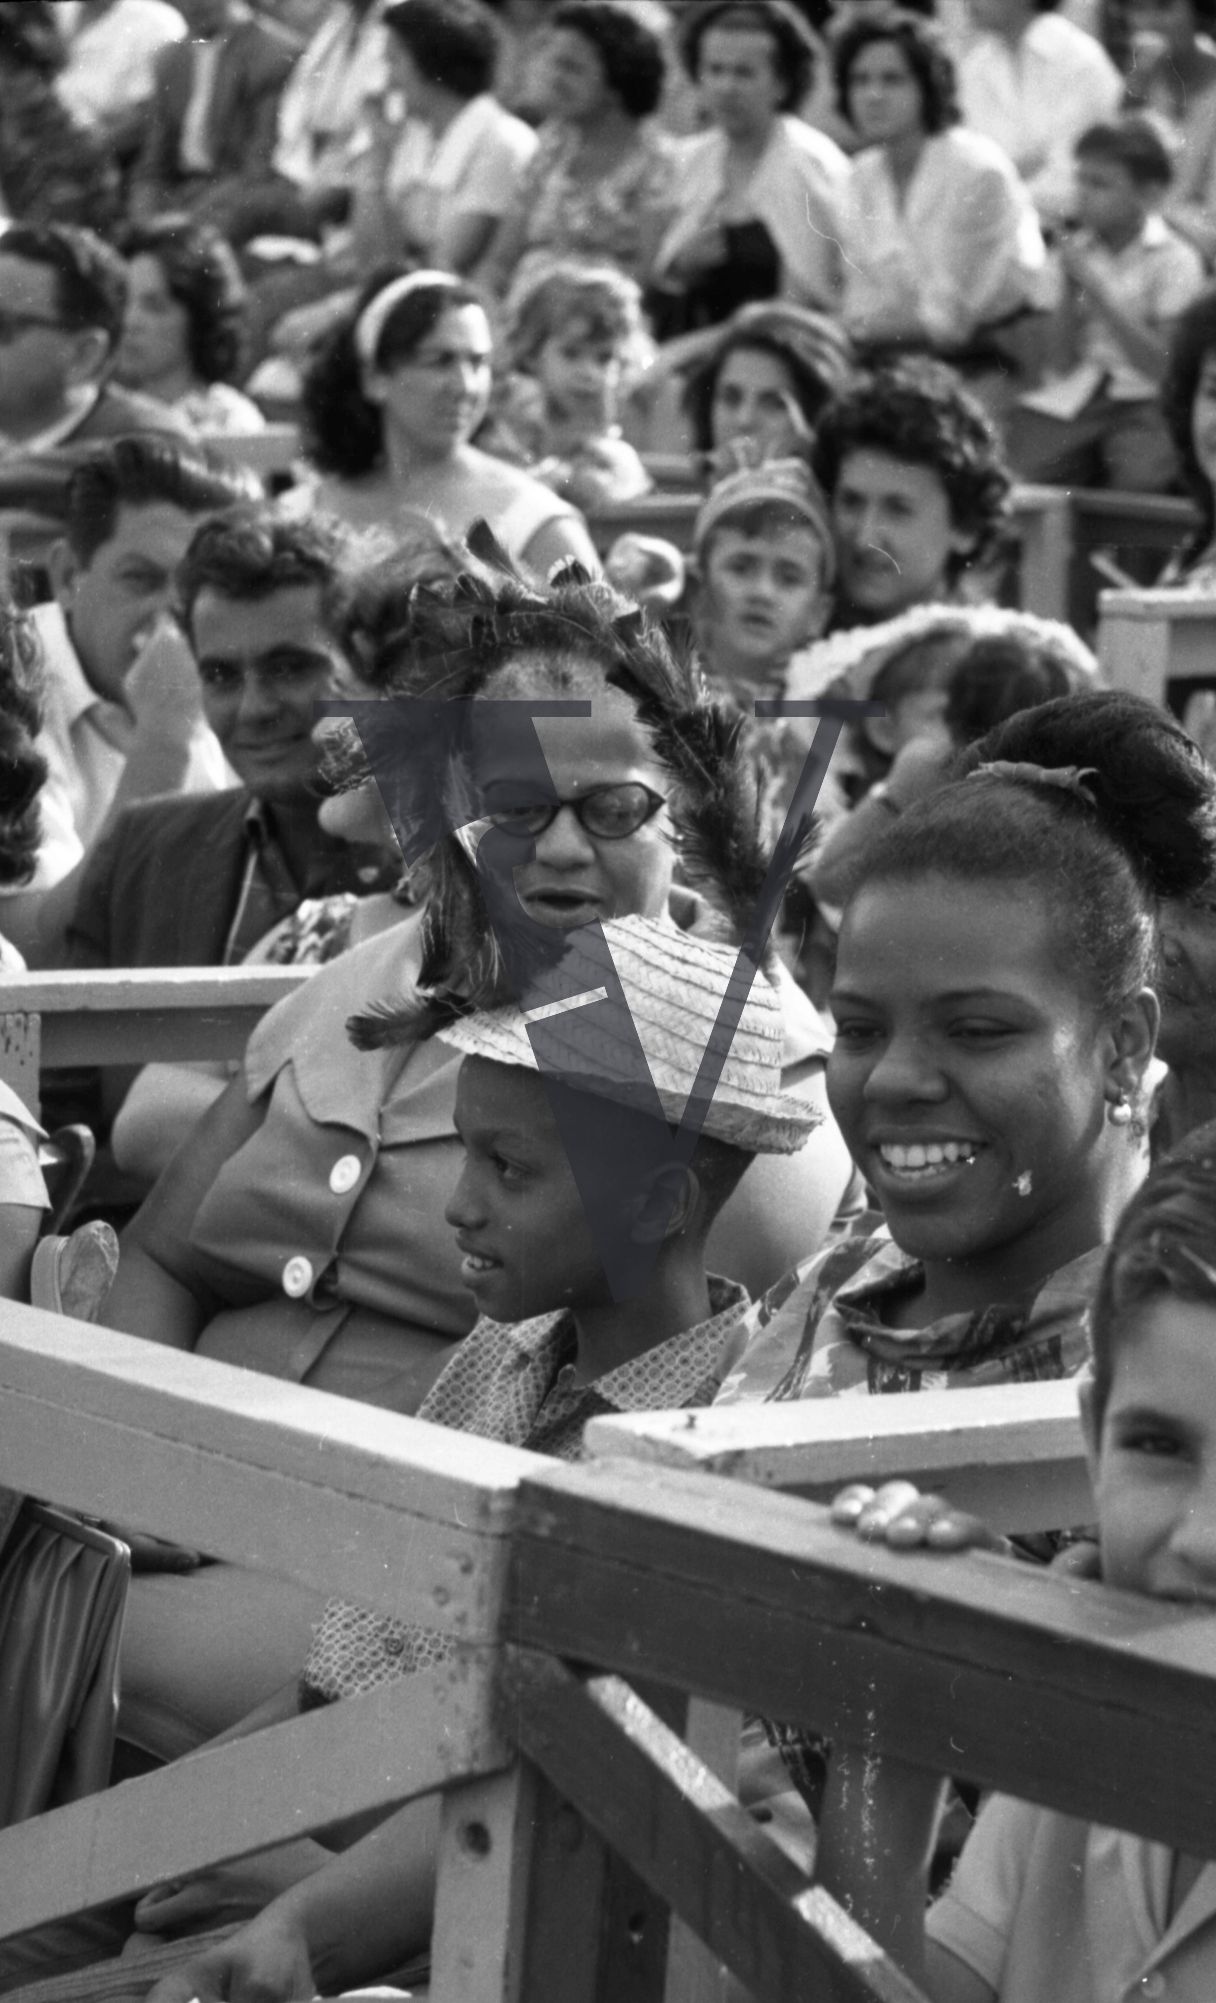 Cuba, Havana Carnival, family smiling.